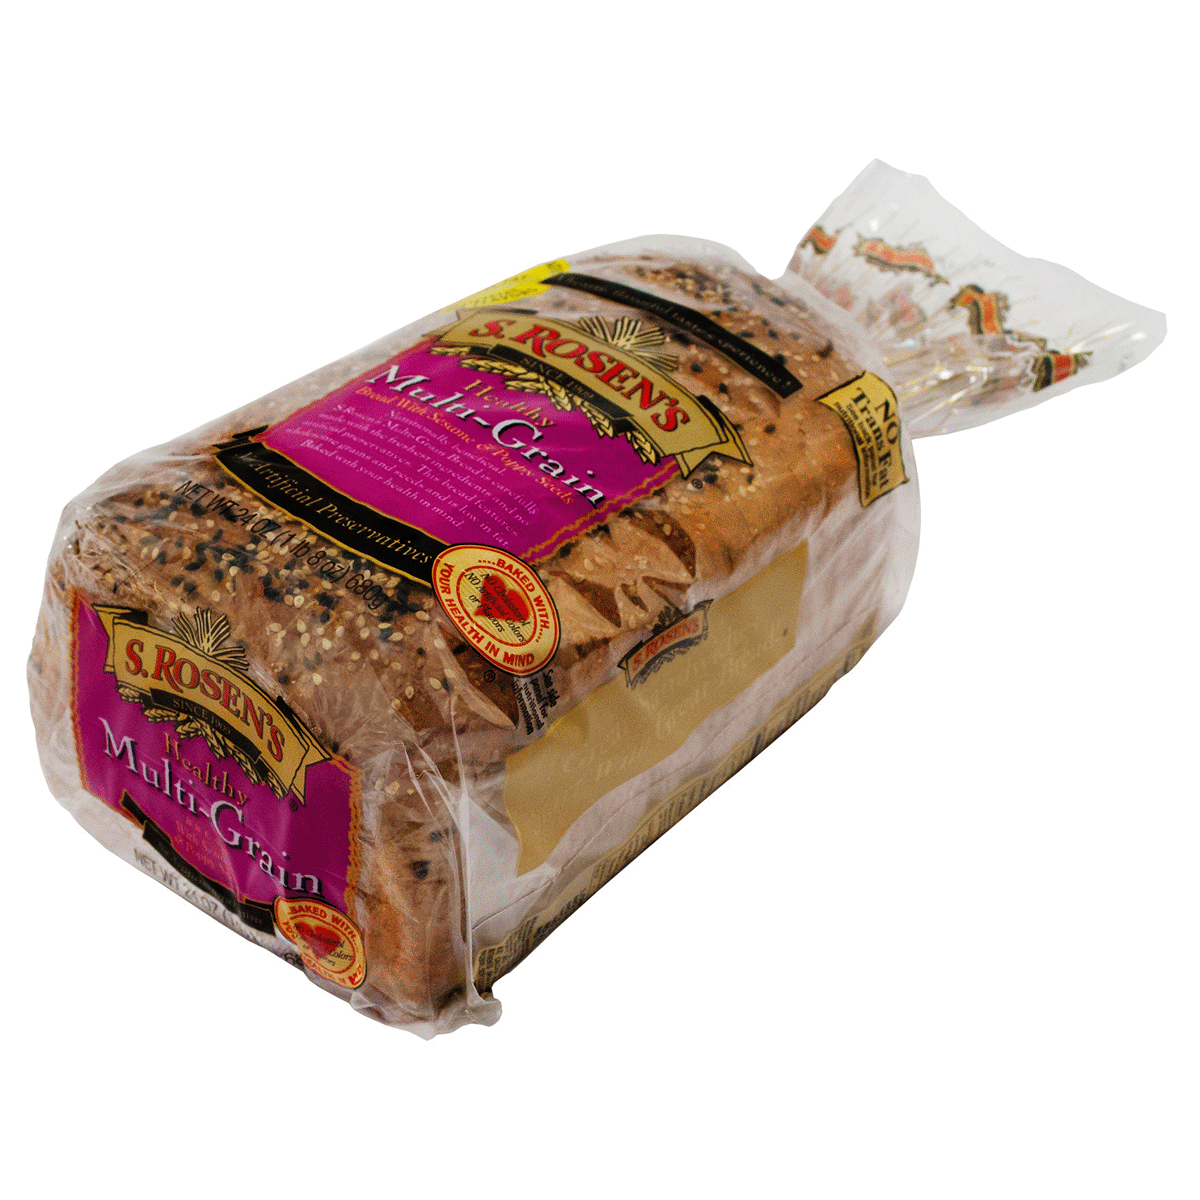 slide 1 of 1, S. Rosen's S Rosens Healthy Multigrain Bread, 24 oz